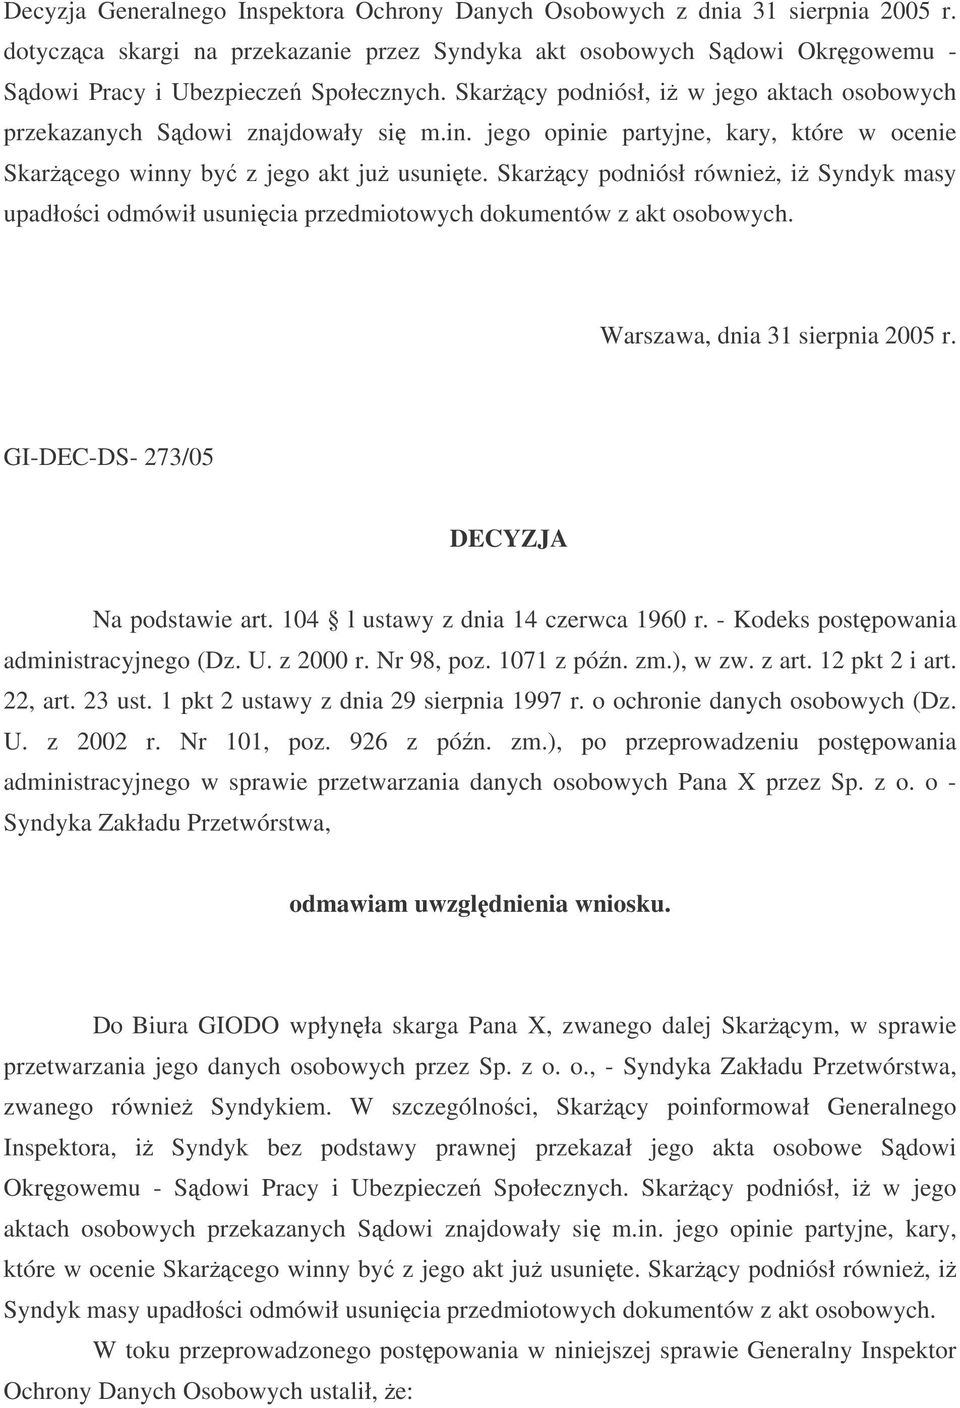 Skarcy podniósł równie, i Syndyk masy upadłoci odmówił usunicia przedmiotowych dokumentów z akt osobowych. Warszawa, dnia 31 sierpnia 2005 r. GI-DEC-DS- 273/05 DECYZJA Na podstawie art.